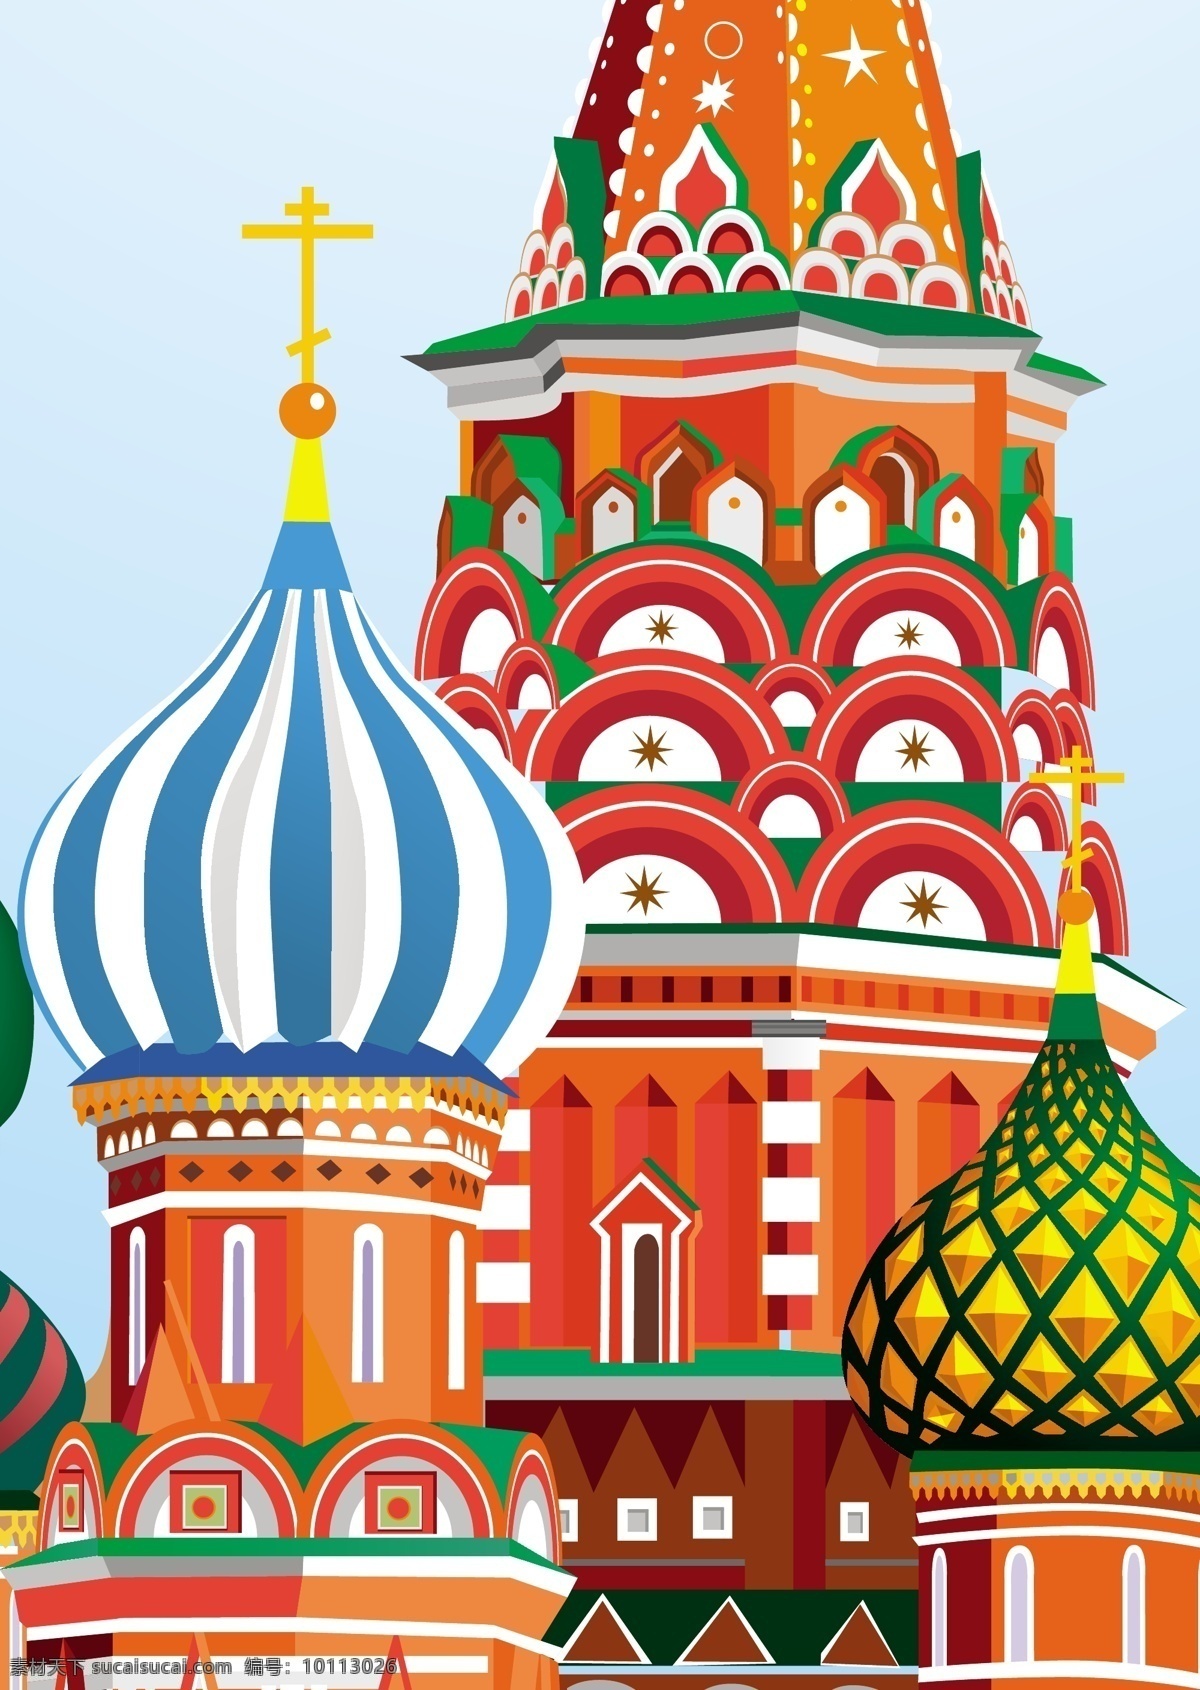 莫斯科矢量 矢量建筑 神秘 彩色 房屋建筑 儿童插画 手绘插画